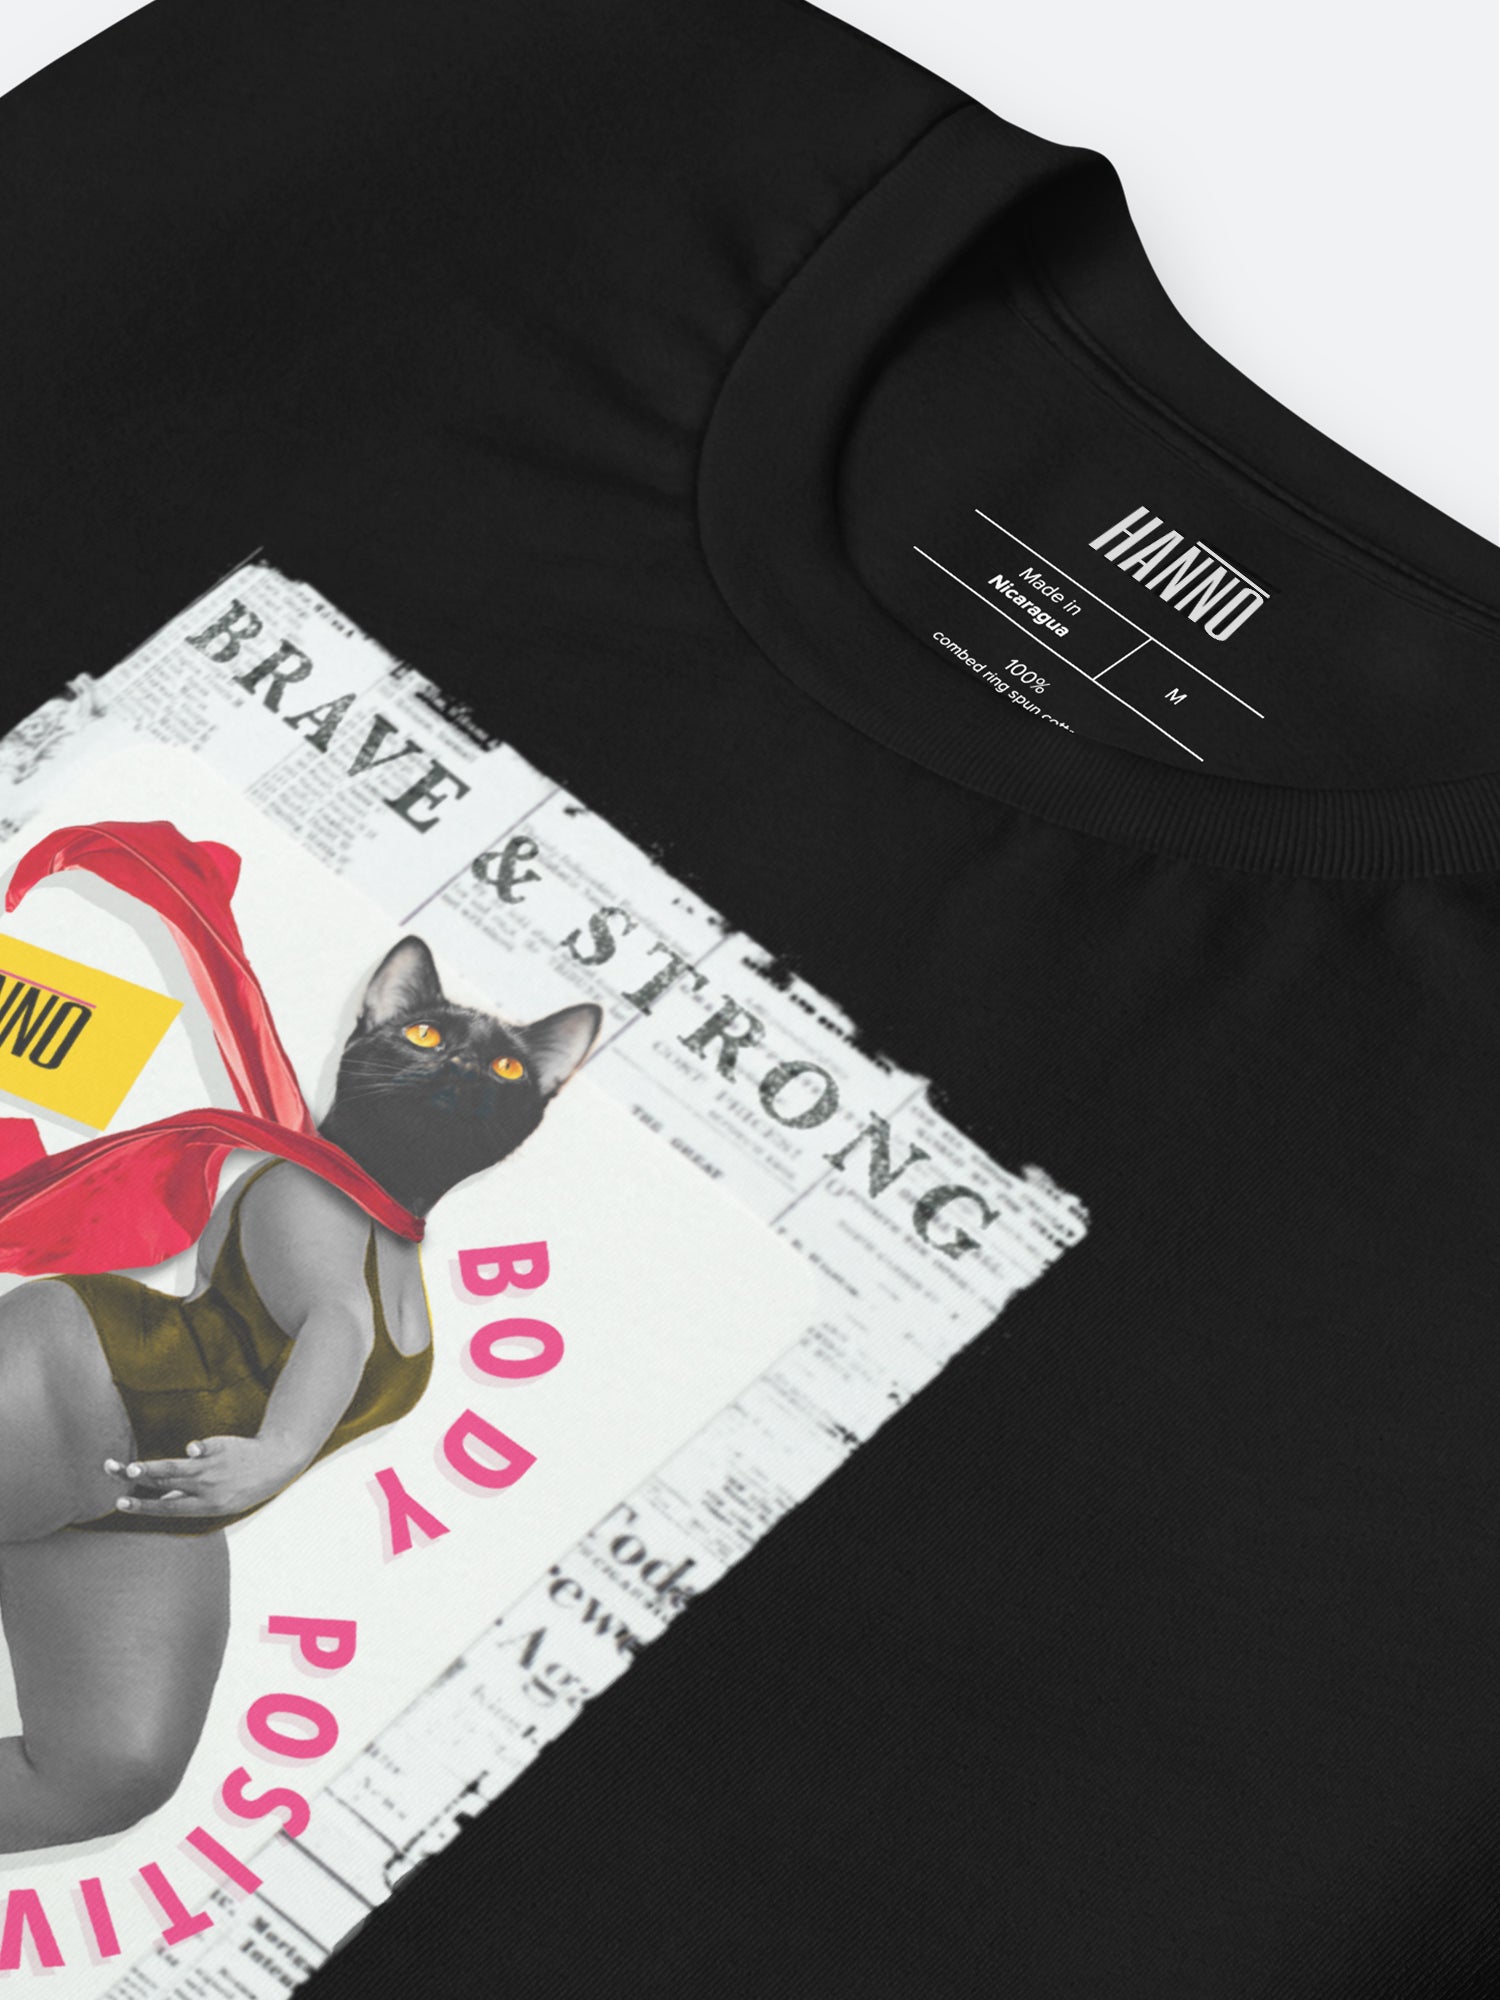 Dancing Black Cat T Shirt, Dancing Black Cat T Shirt Online